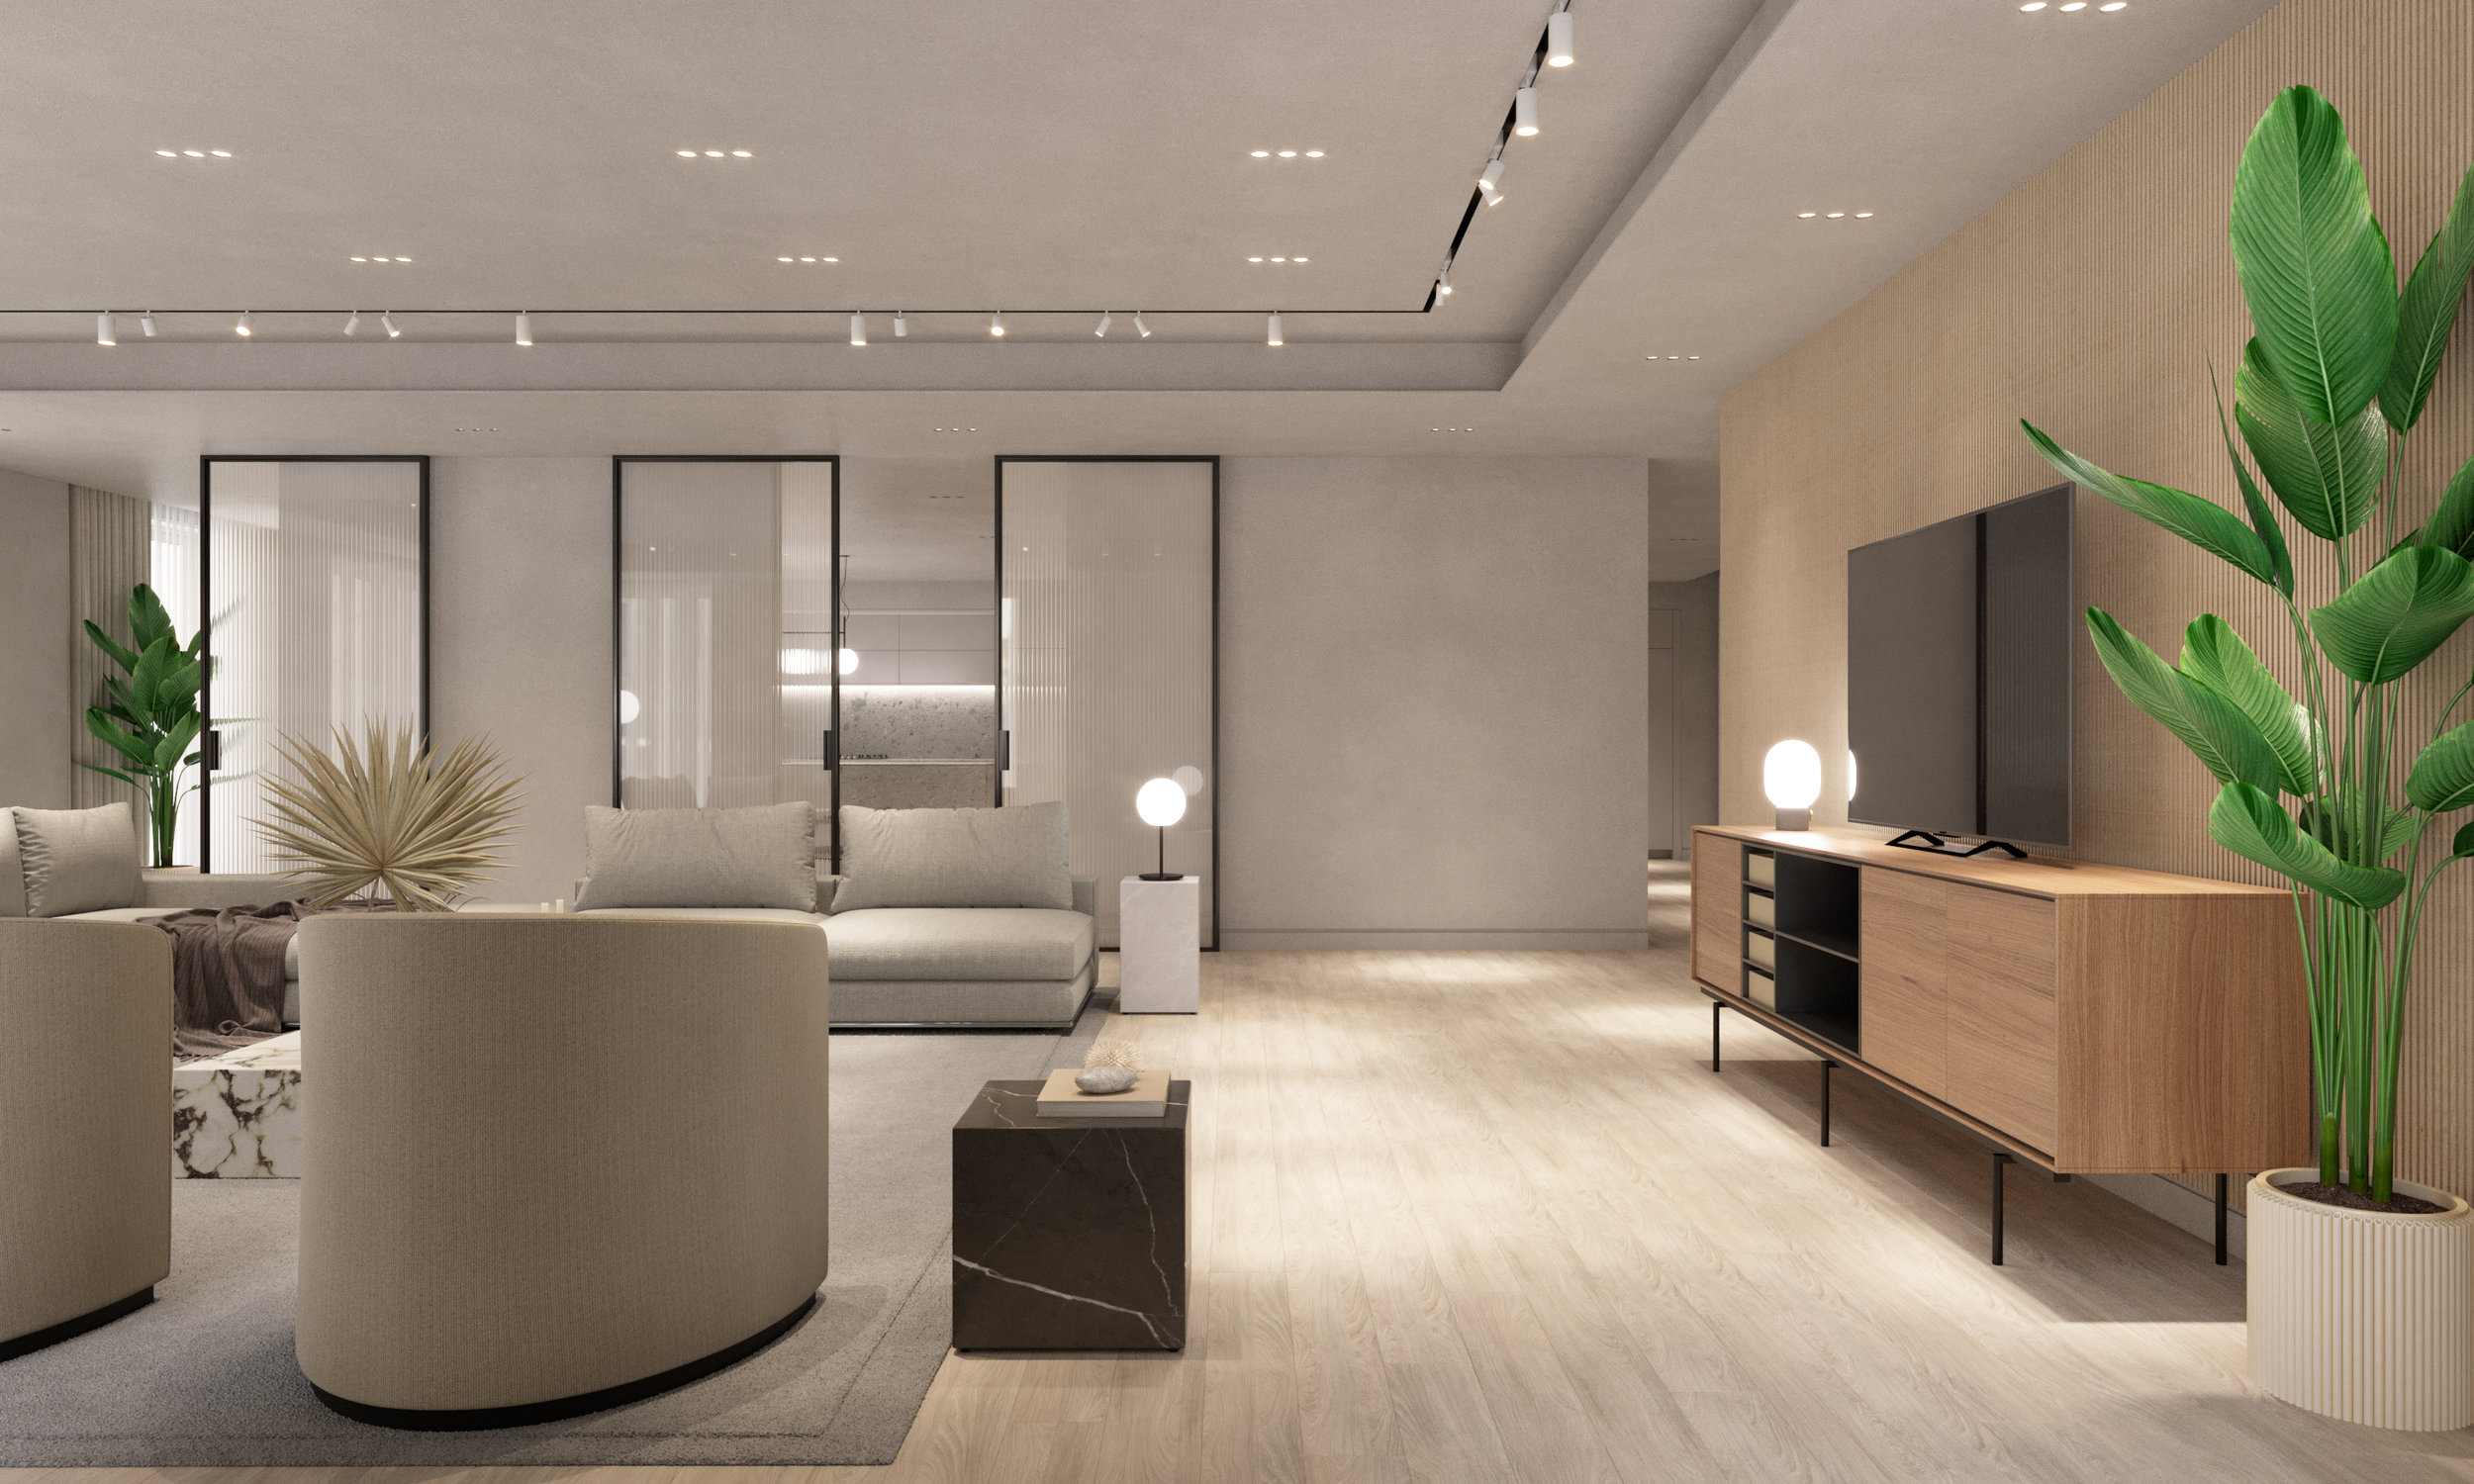 Unit4 Interior Design Residential Apartment Concept Visuals CGI Artist in London